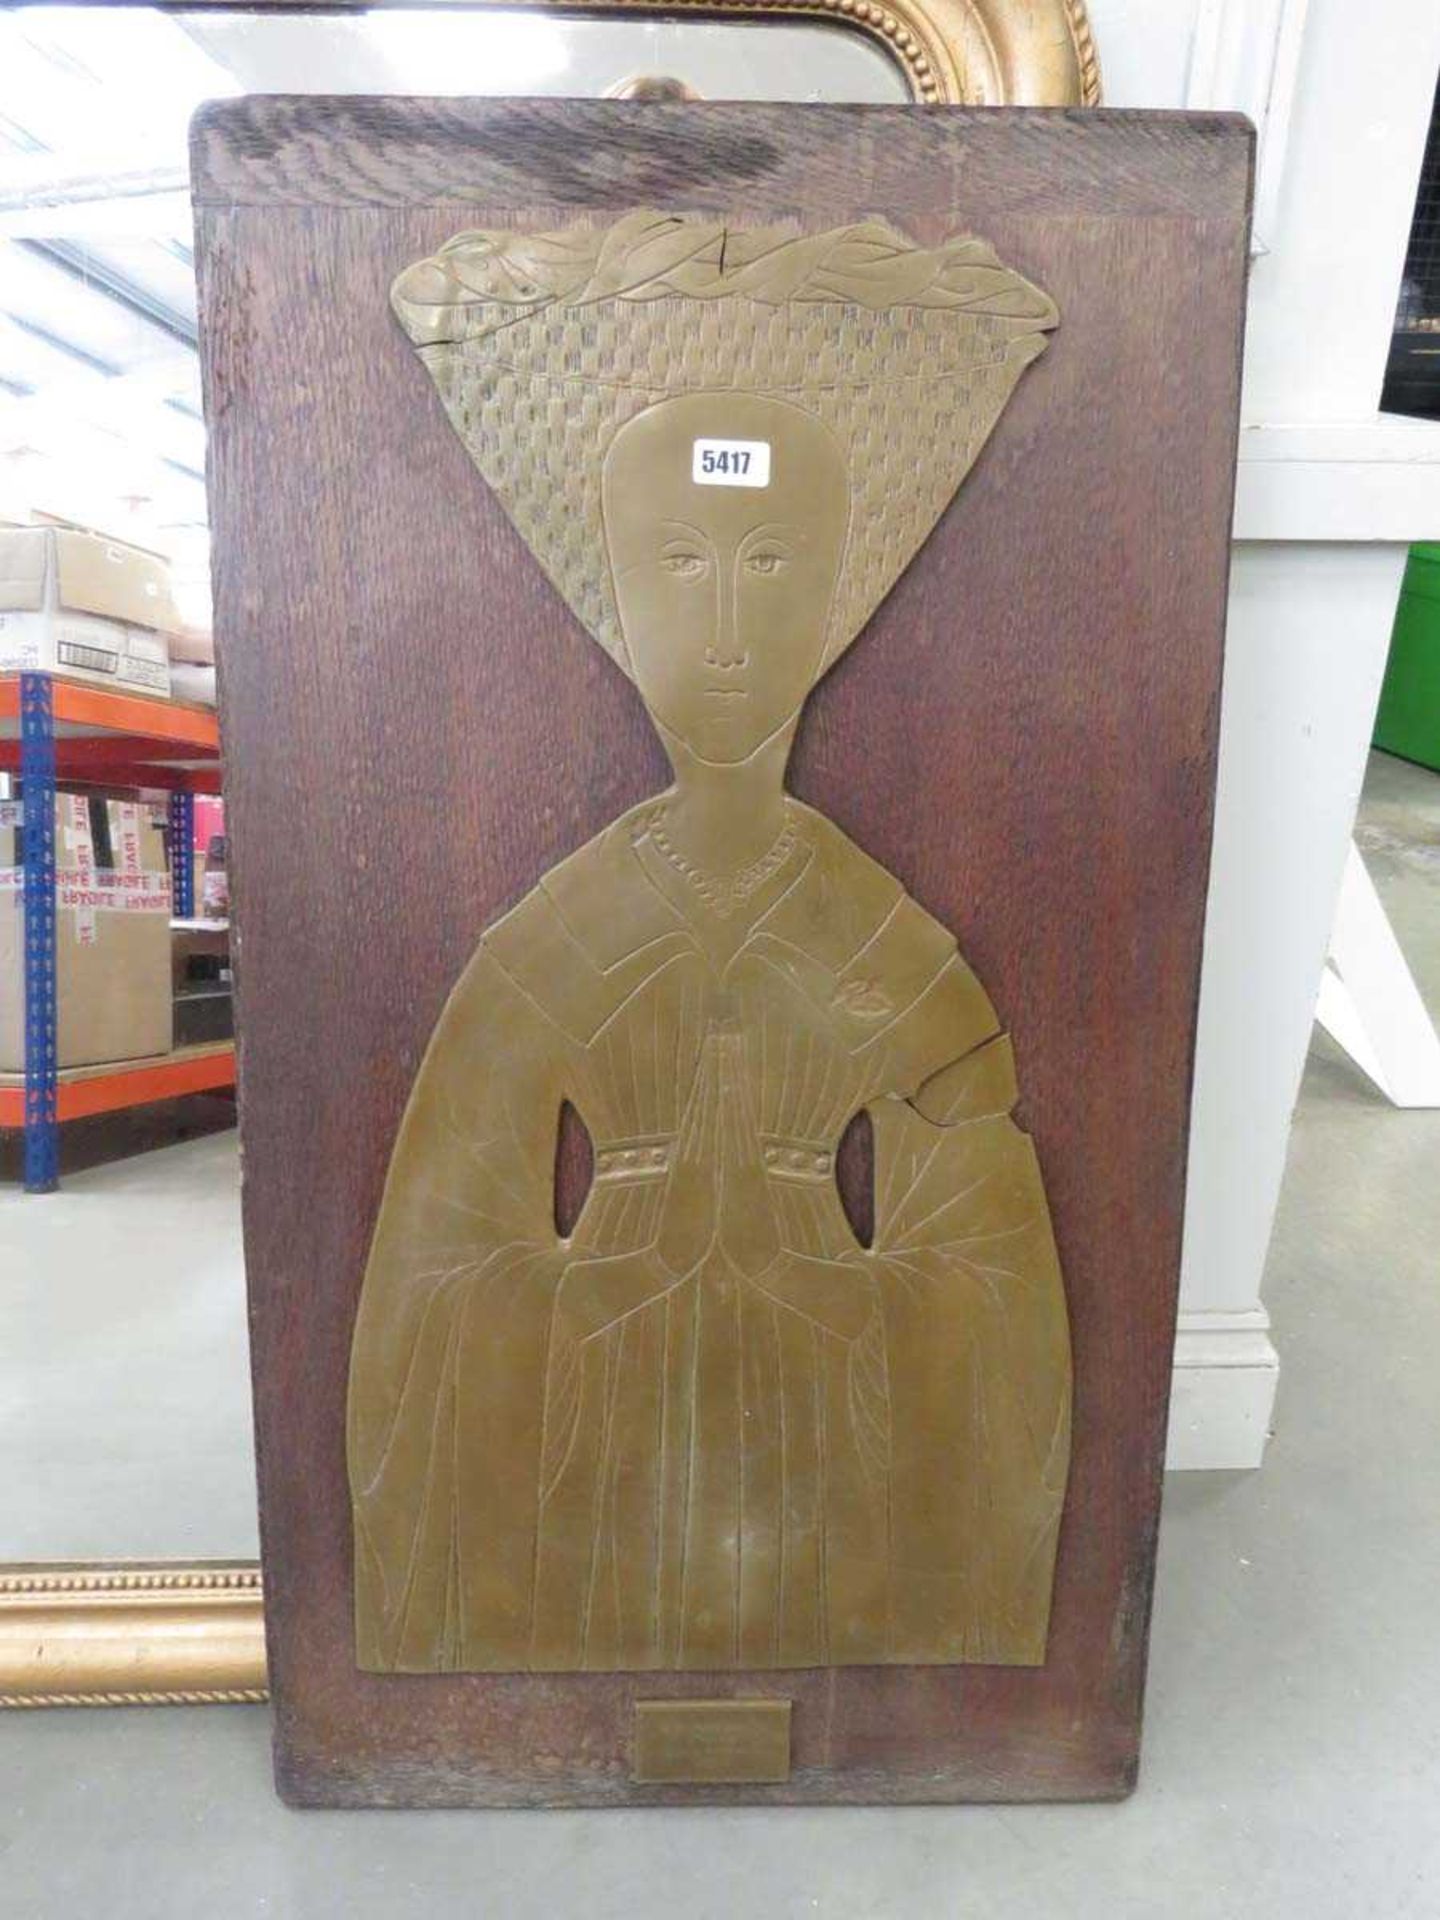 Oak board with figure of a brass rubbing